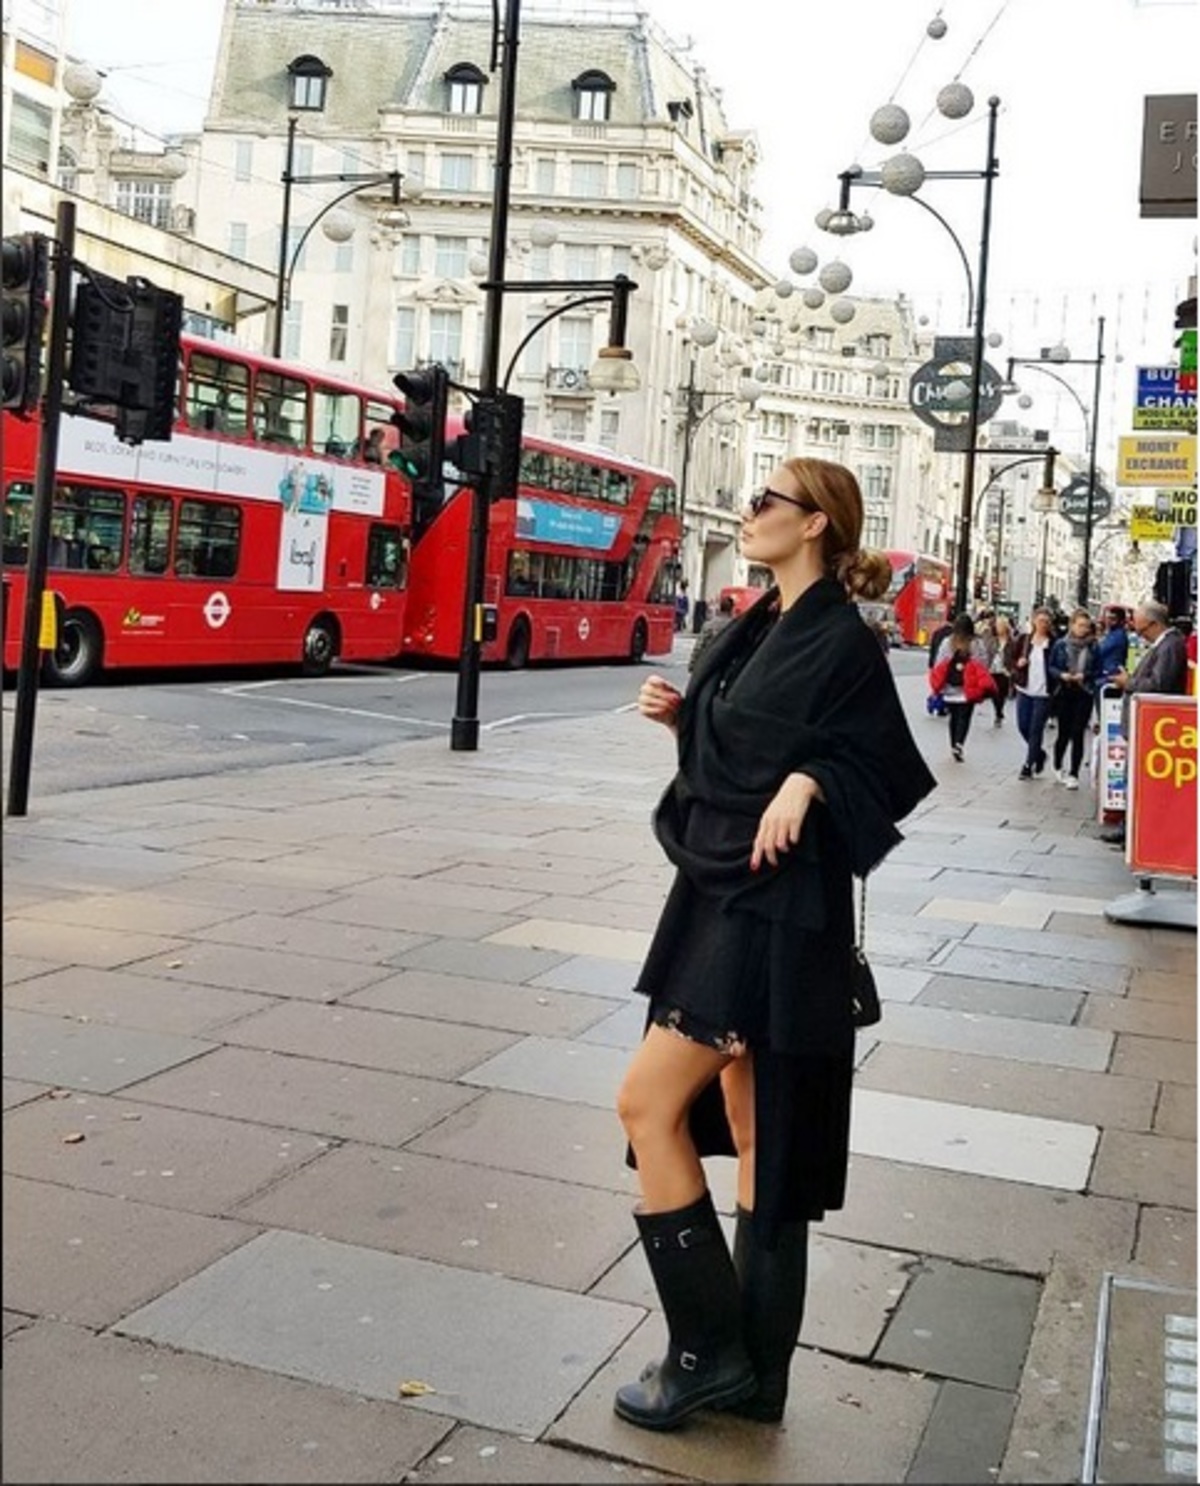 Αντωνία Καλλιμούκου: Νέες φωτογραφίες από το ταξίδι που έκανε στο Λονδίνο με τον σύντροφό της!